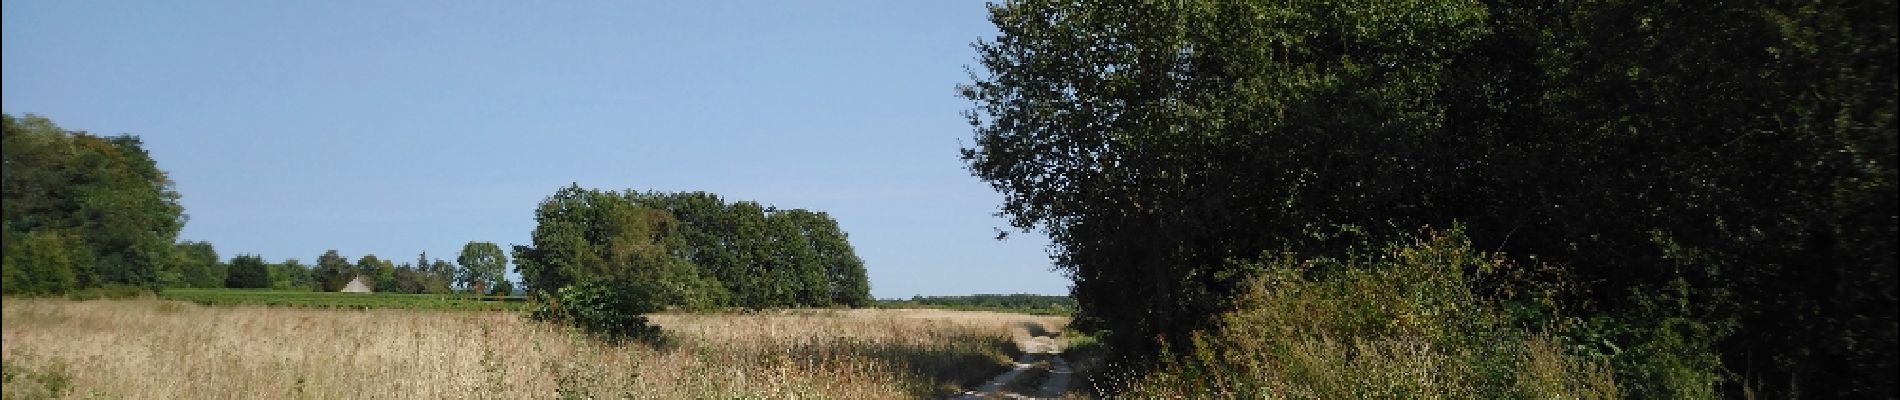 Excursión Senderismo Montlouis-sur-Loire - Montlouis-sur-Loire - Lussault-sur-Loire - 2016 08 14 - 12.5km 2h30mn - Photo